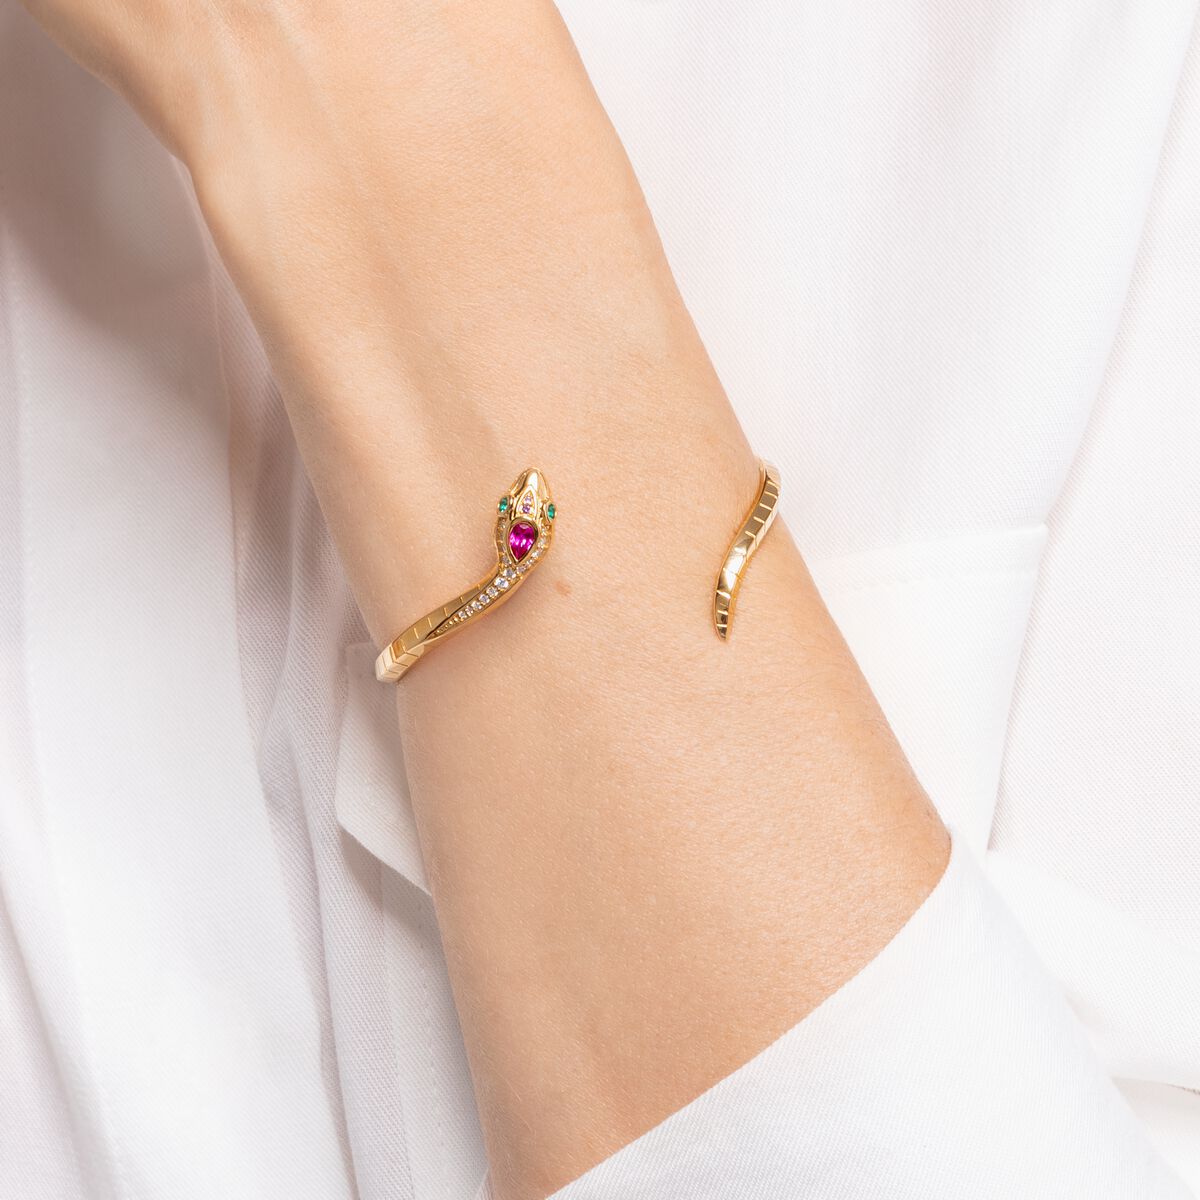 Bangle for women: Delicate golden snake design